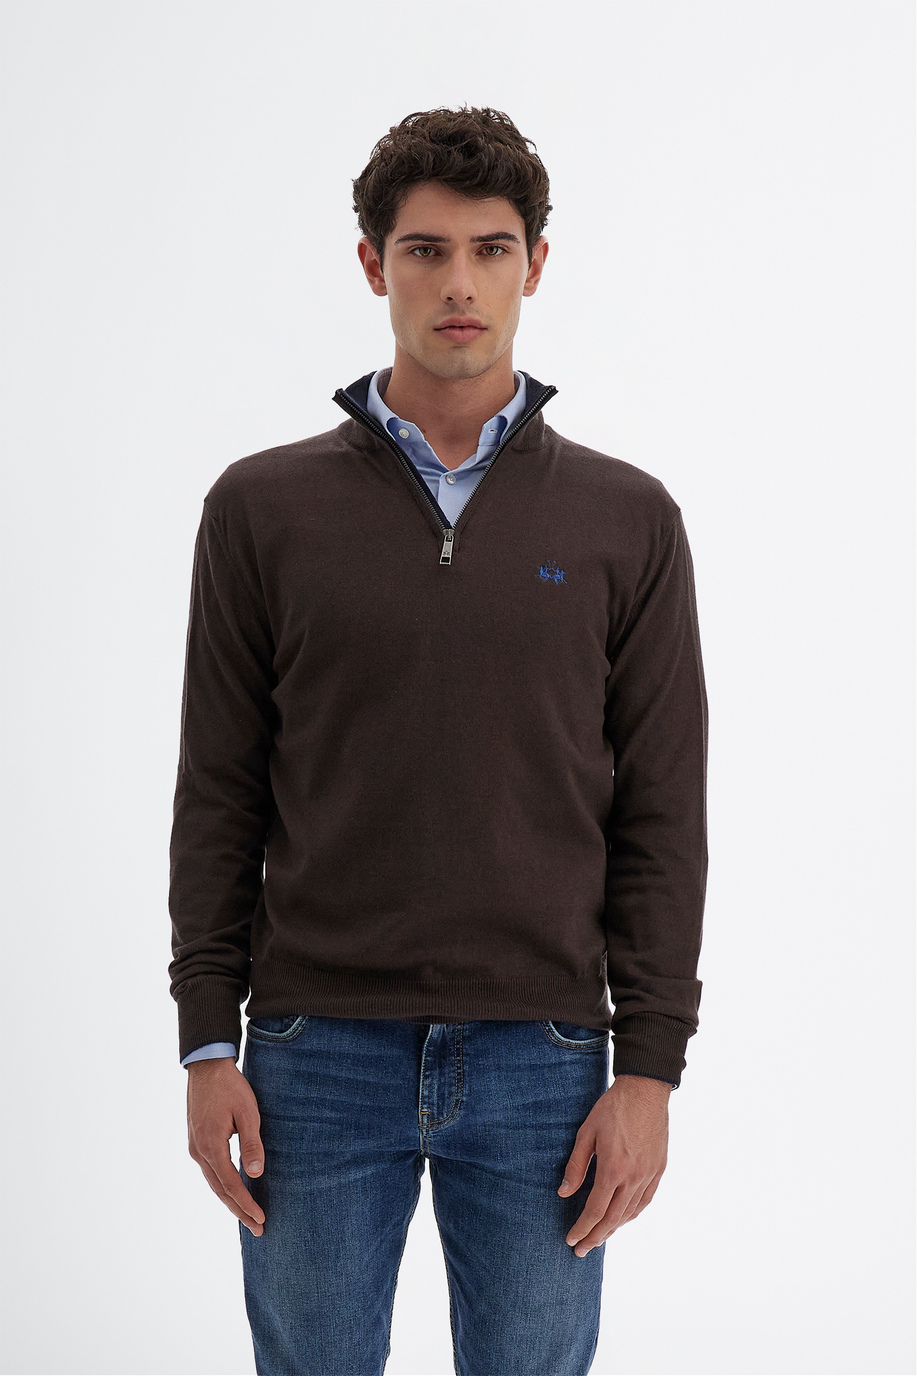 Maglia tricot da uomo a maniche lunghe in cotone misto lana regular fit con scollo a zip - Look eleganti per lui | La Martina - Official Online Shop